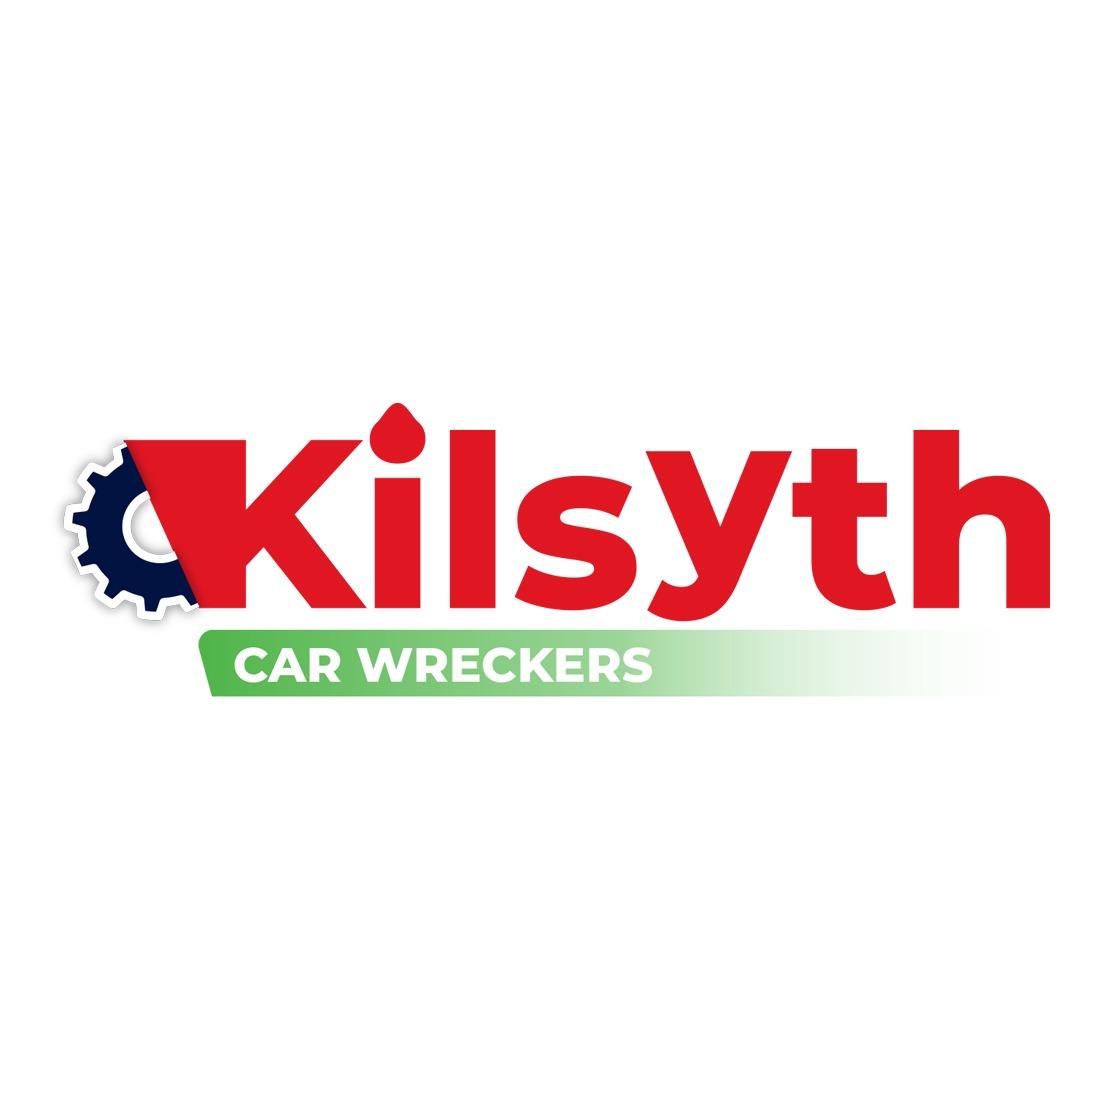 Kilsyth Car Wreckers Maroondah